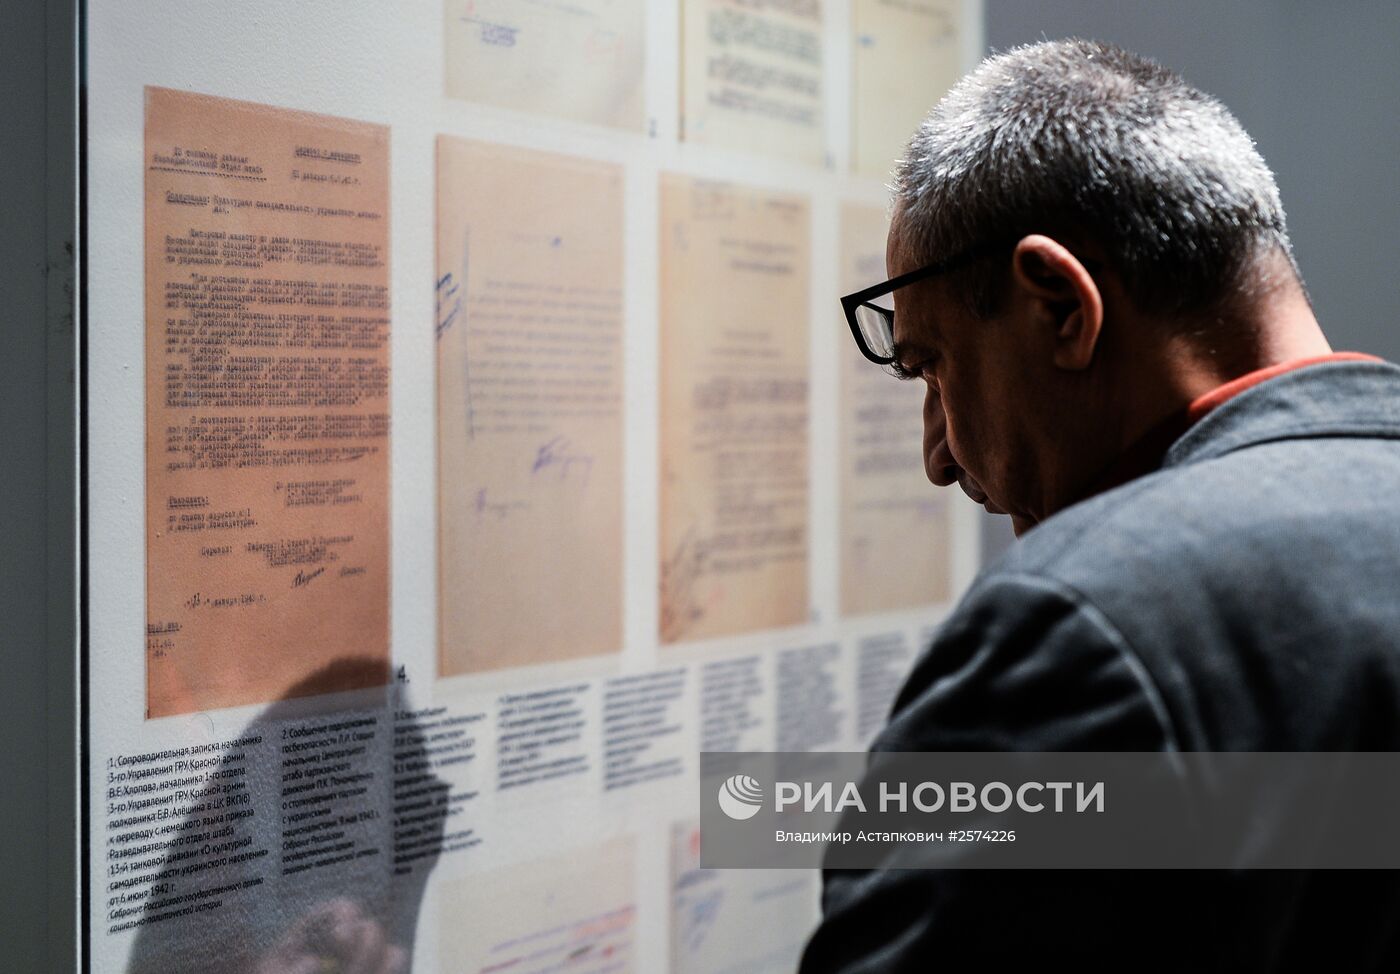 Открытие выставки "На пути к Победе: исторические источники свидетельствуют"